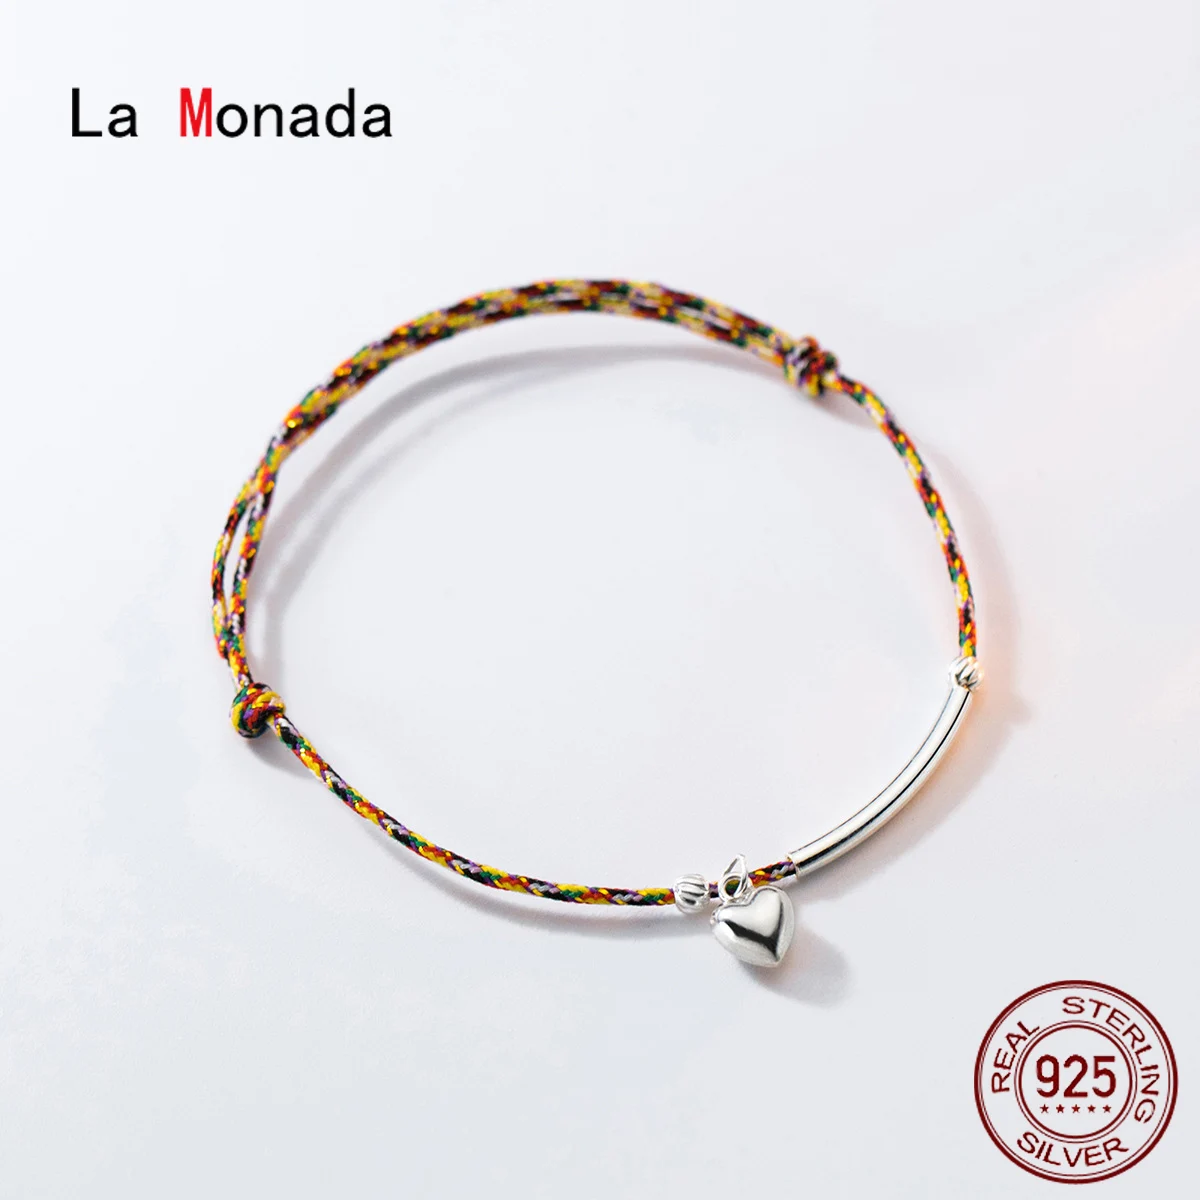 

Женский веревочный браслет с сердечками La Monada, разноцветные браслеты из стерлингового серебра 925 пробы с нитками, 23 см